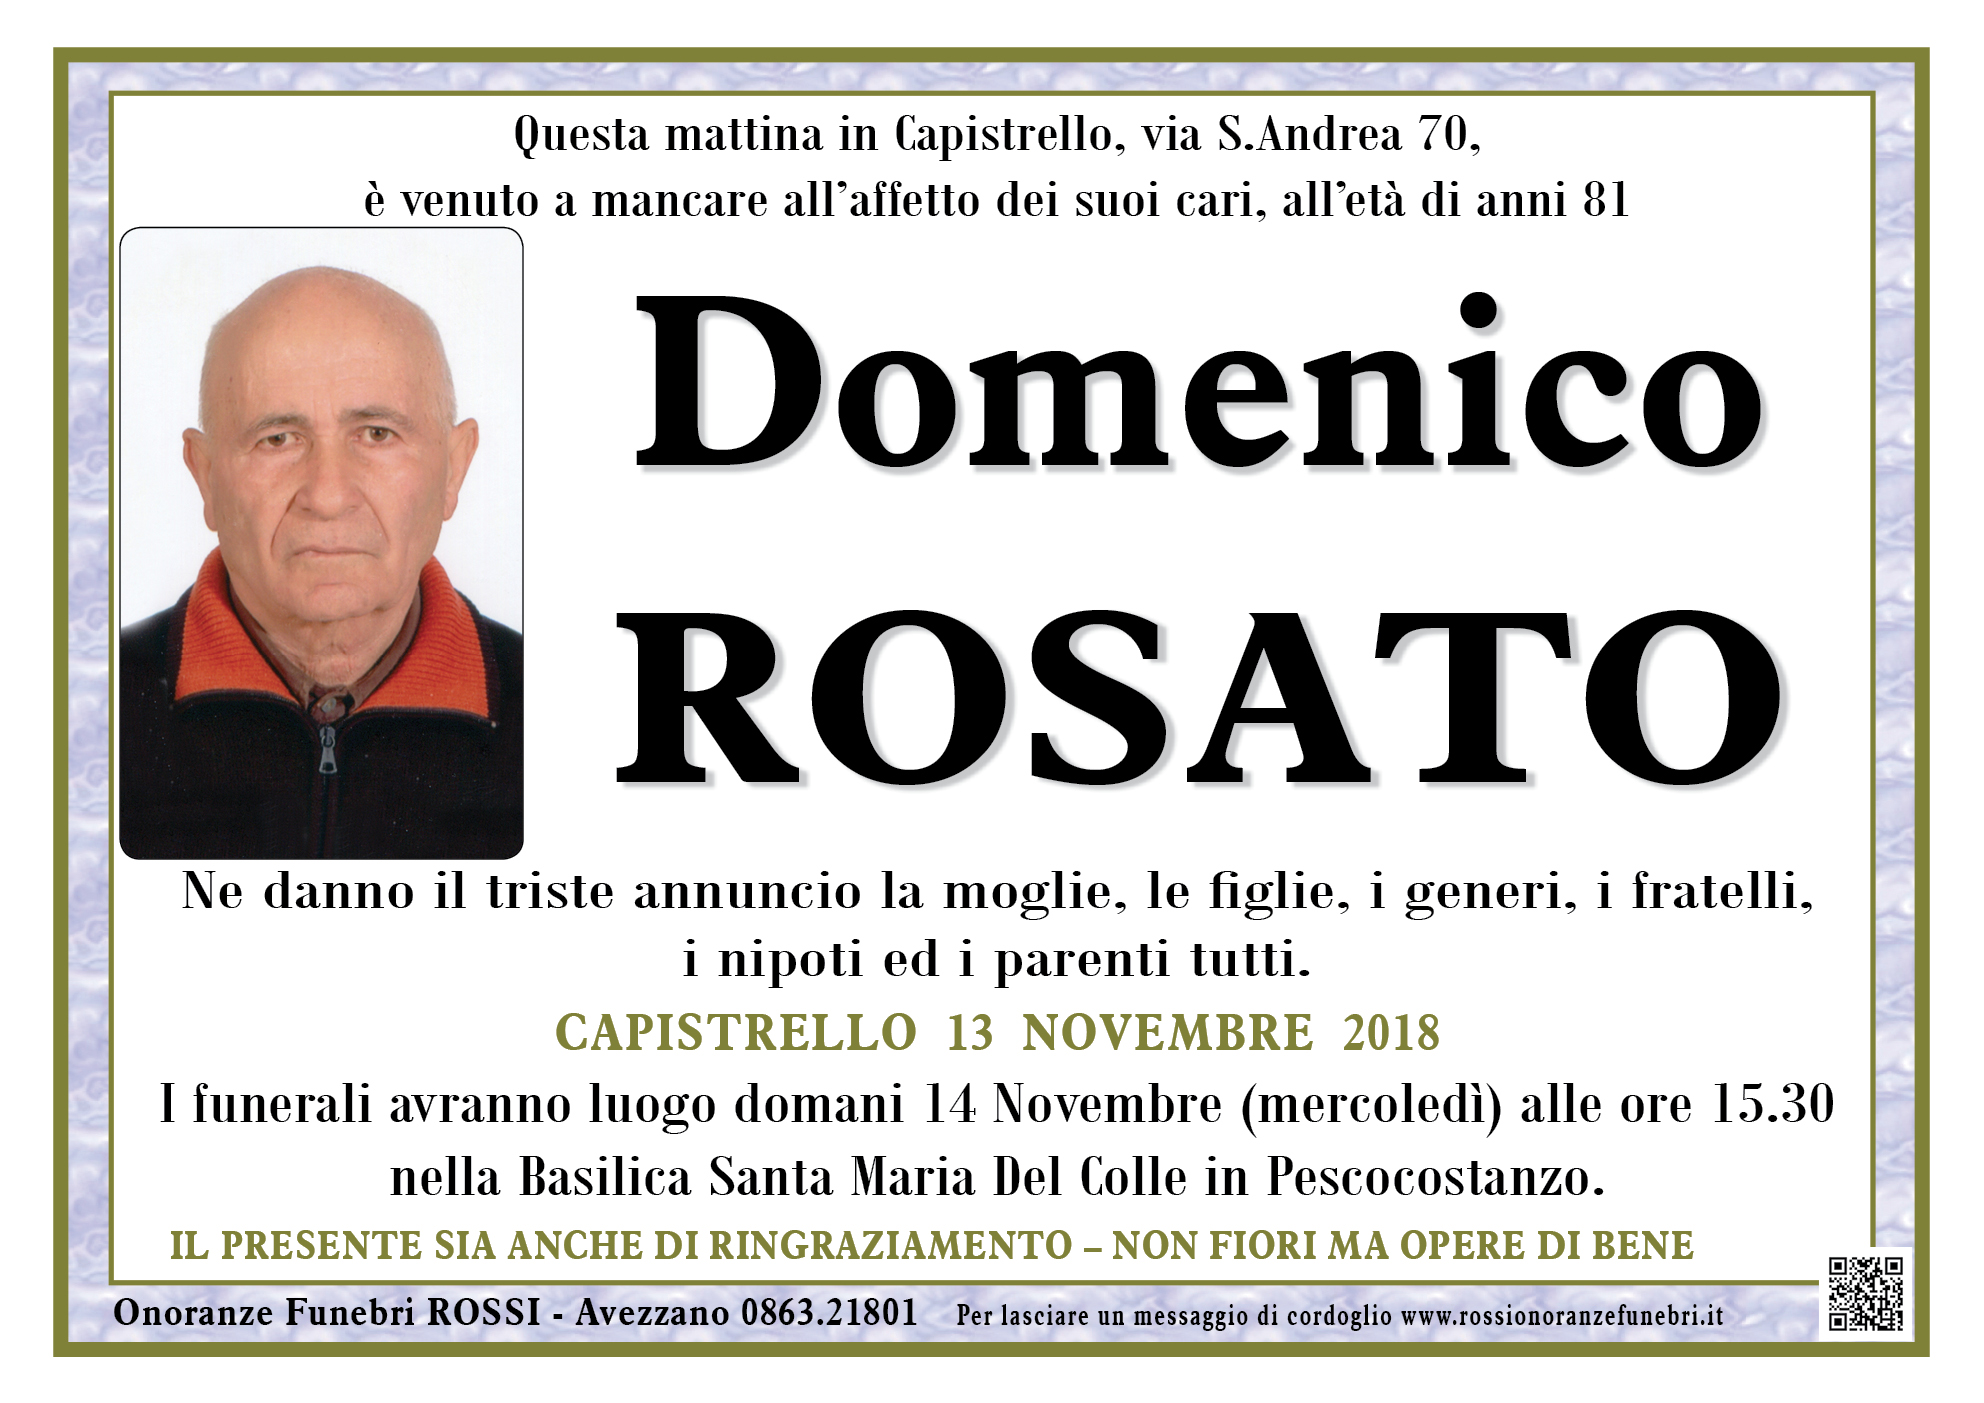 Domenico Rosato